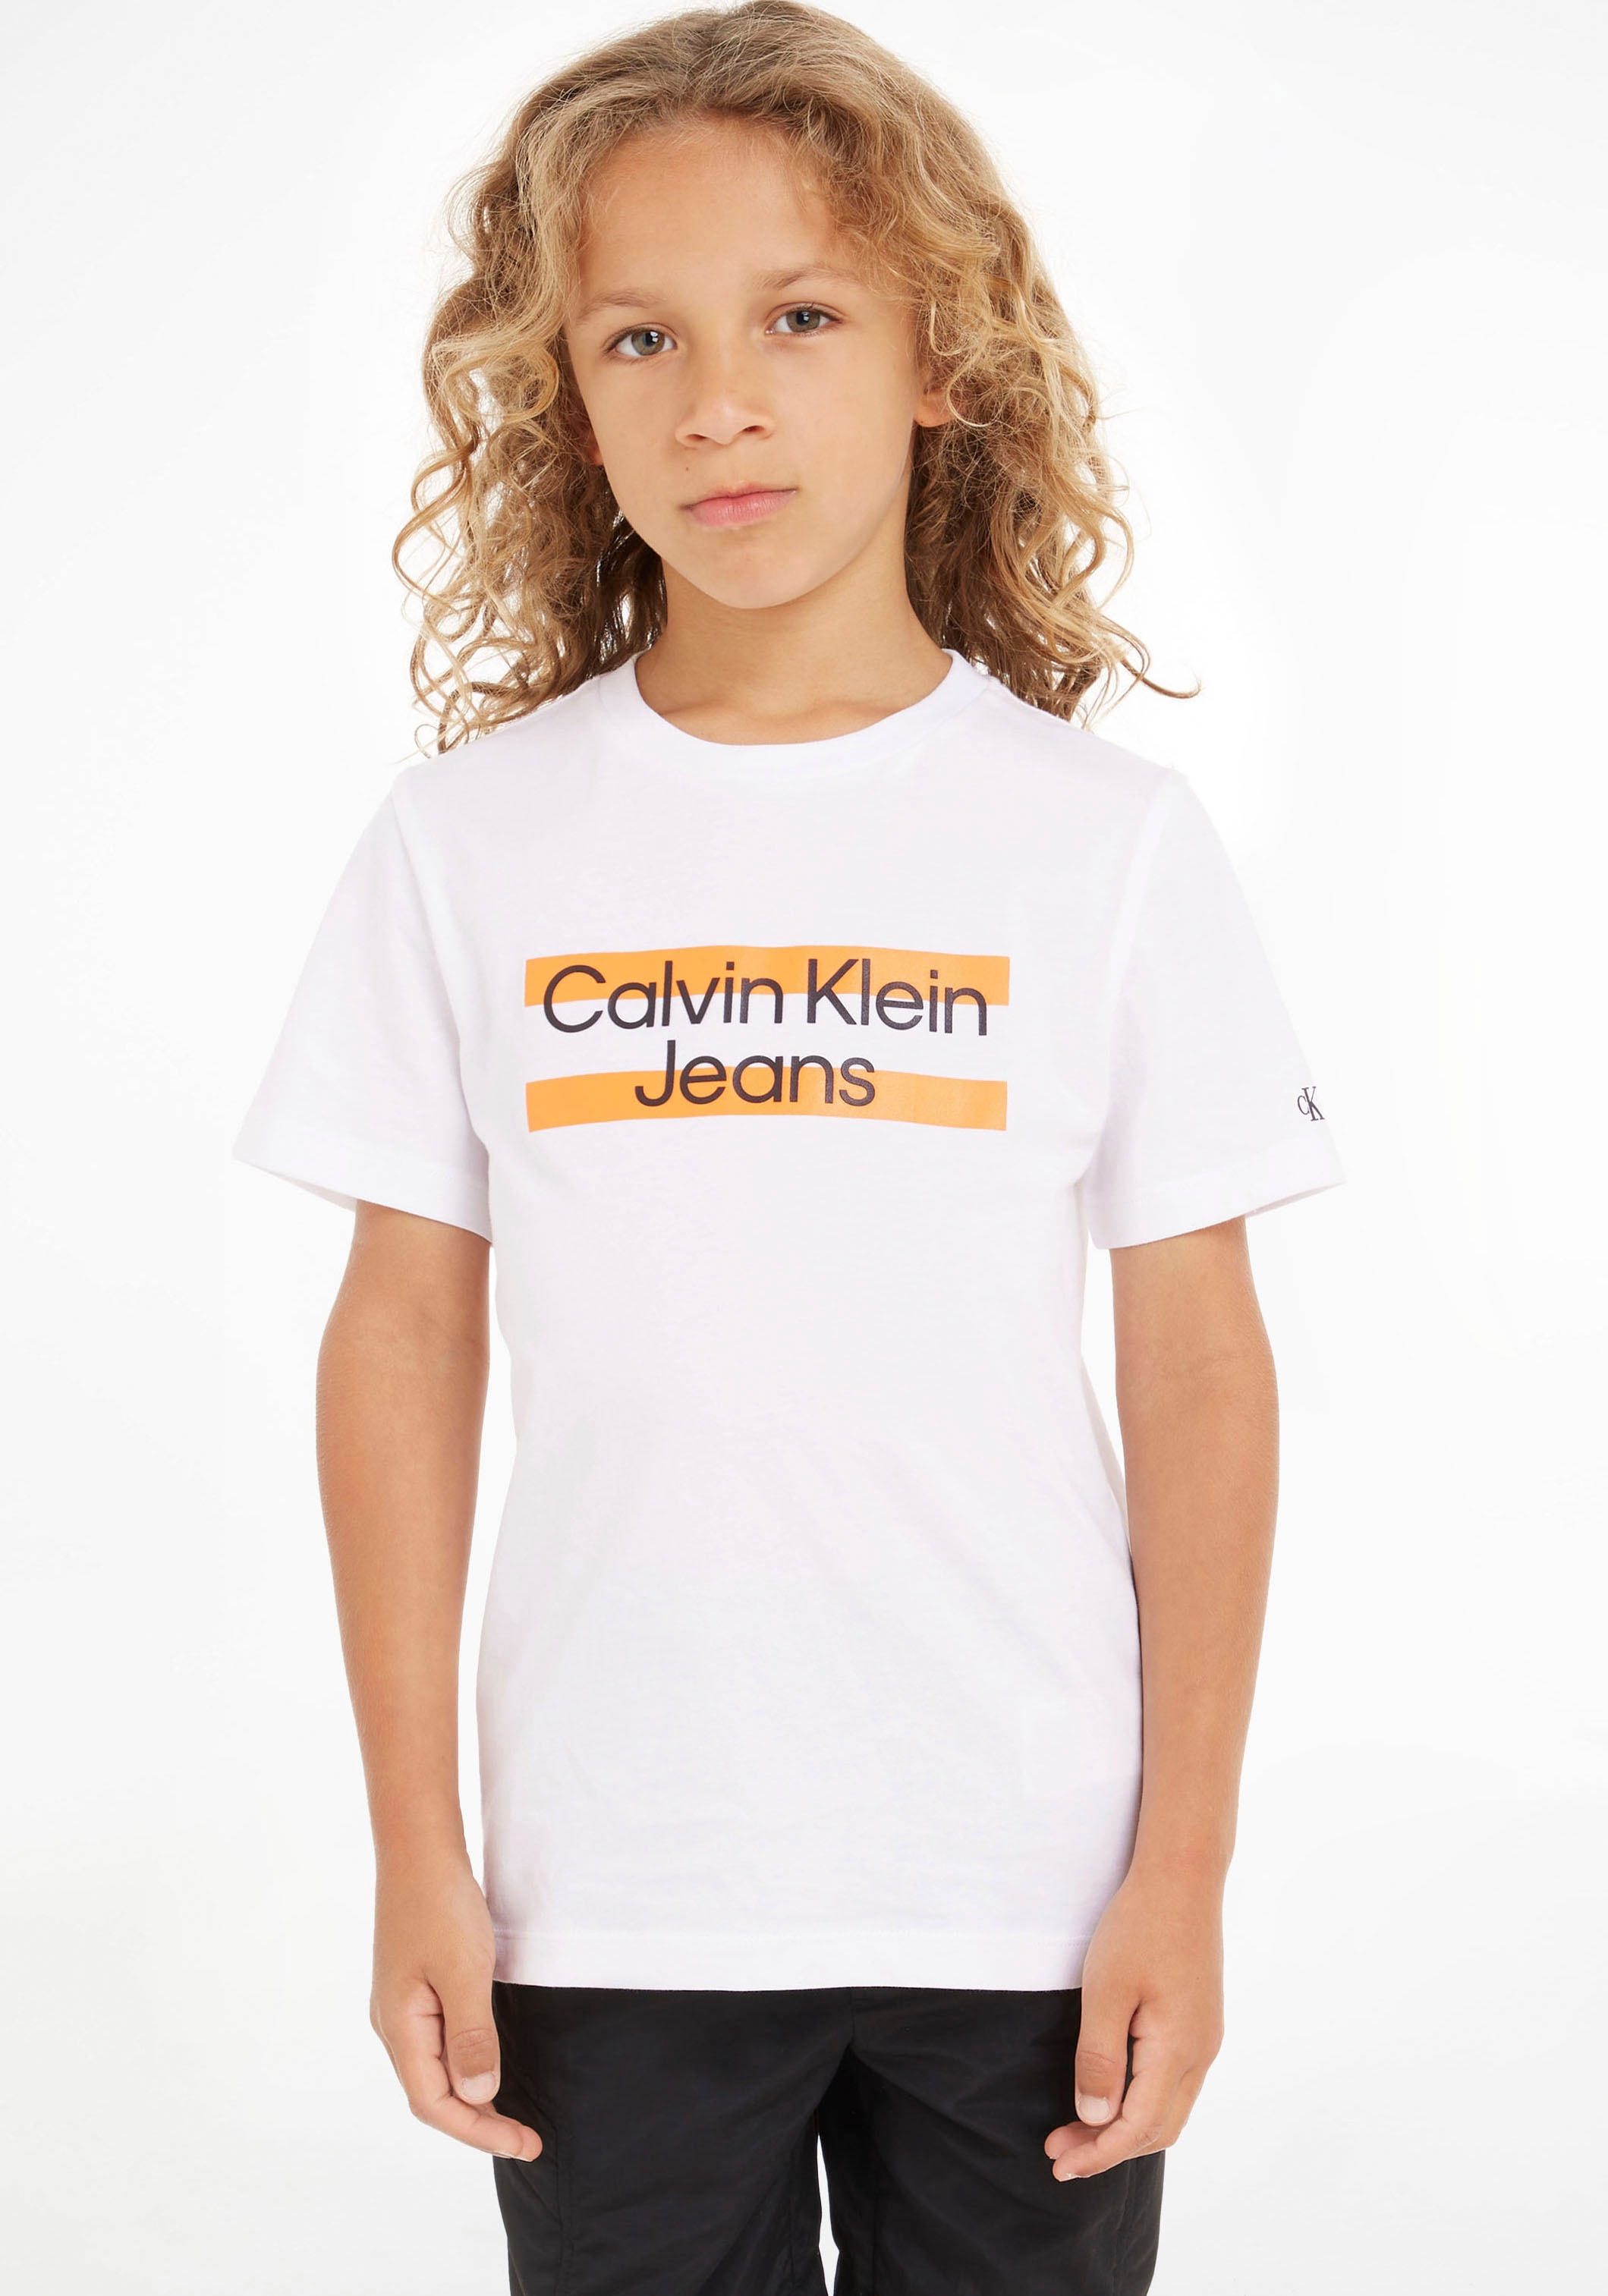 OTTO Logodruck mit Brust T-Shirt, bei Klein Jeans Klein der Calvin Calvin auf